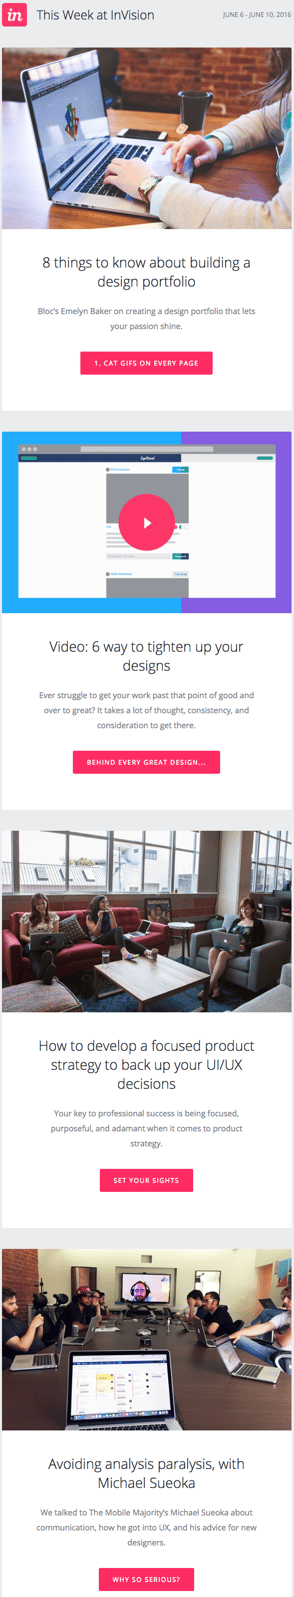 E-newsletter příklad design s blog příspěvky od InVision